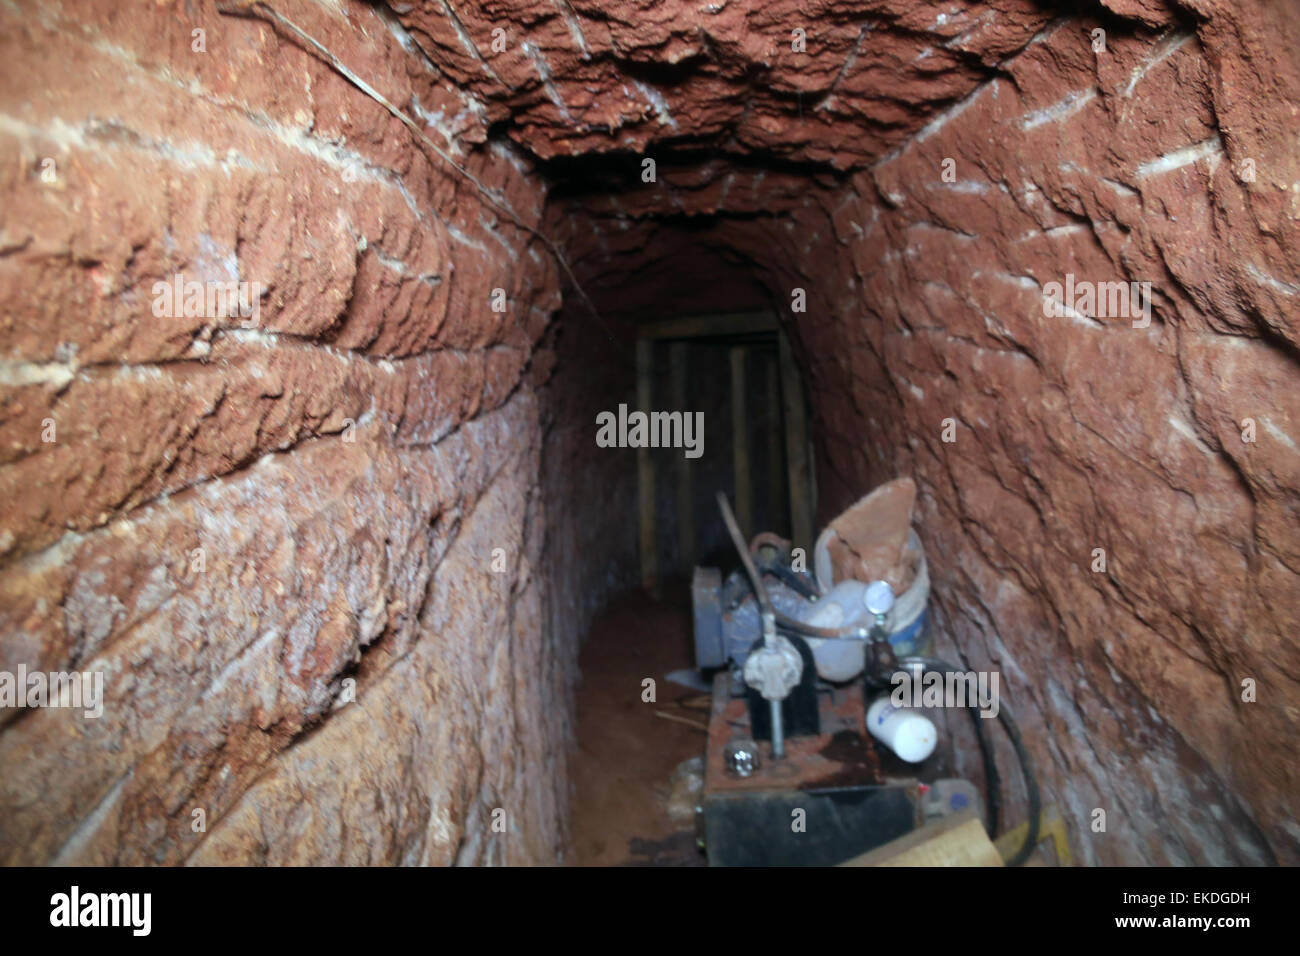 022415: NACO, ARIZ-FBI-Agenten weiterhin die Entdeckung eines anspruchsvollen grenzüberschreitende Medikament Tunnels über Nacht unbedeckt zu untersuchen, nach einer Verkehrskontrolle von der örtlichen Polizei, die mehr als zwei Tonnen Marihuana ergab.  : Daniel Barrios Stockfoto